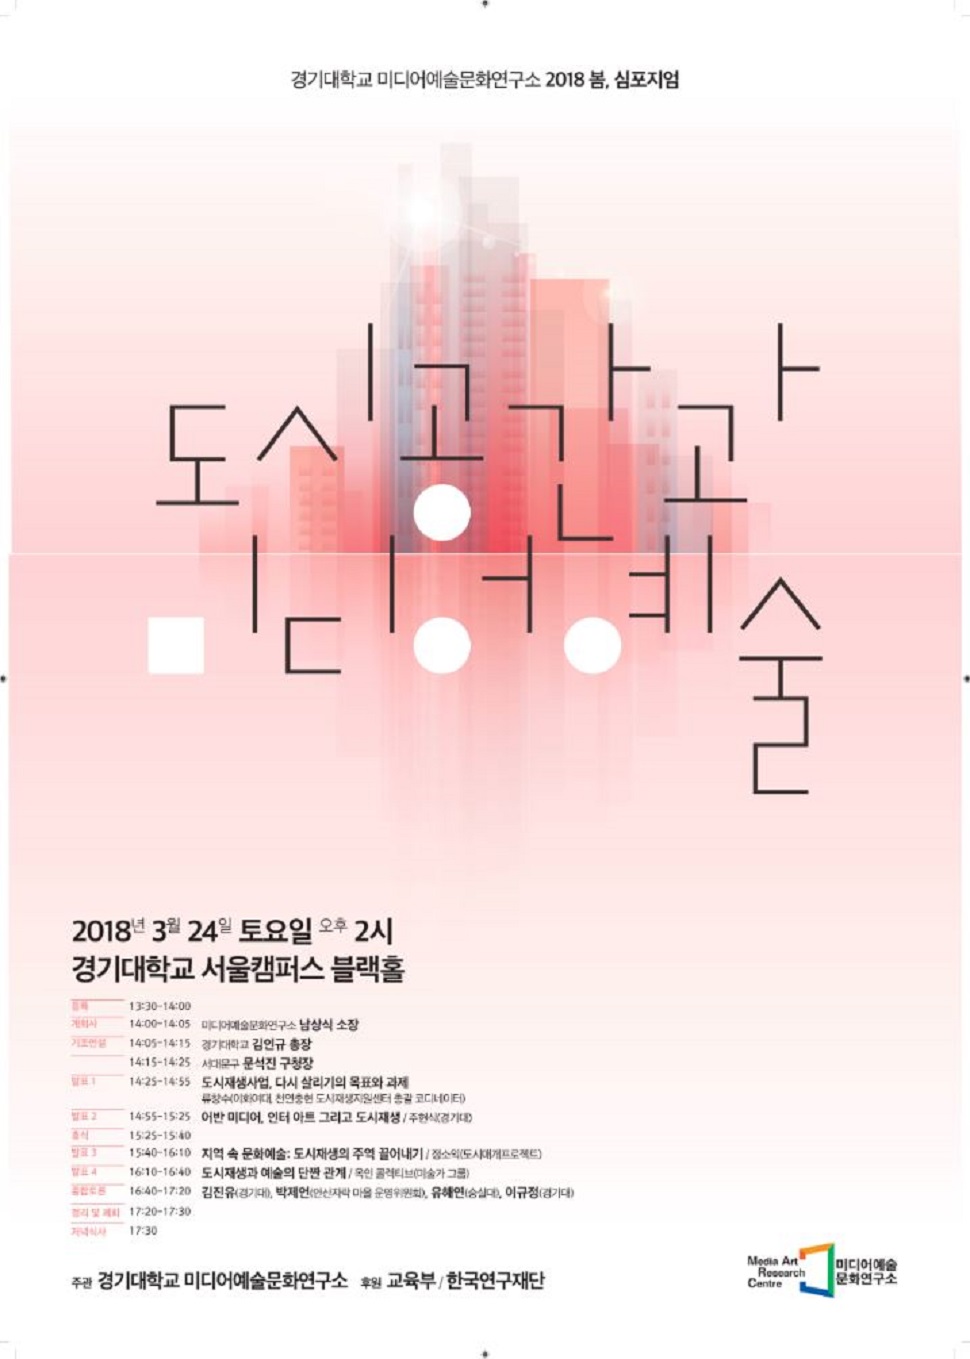 경기대학교 미디어예술문화연구소 도시공간과 미디어예술 심포지엄 포스터(사진제공: 지식콘텐츠연구소)